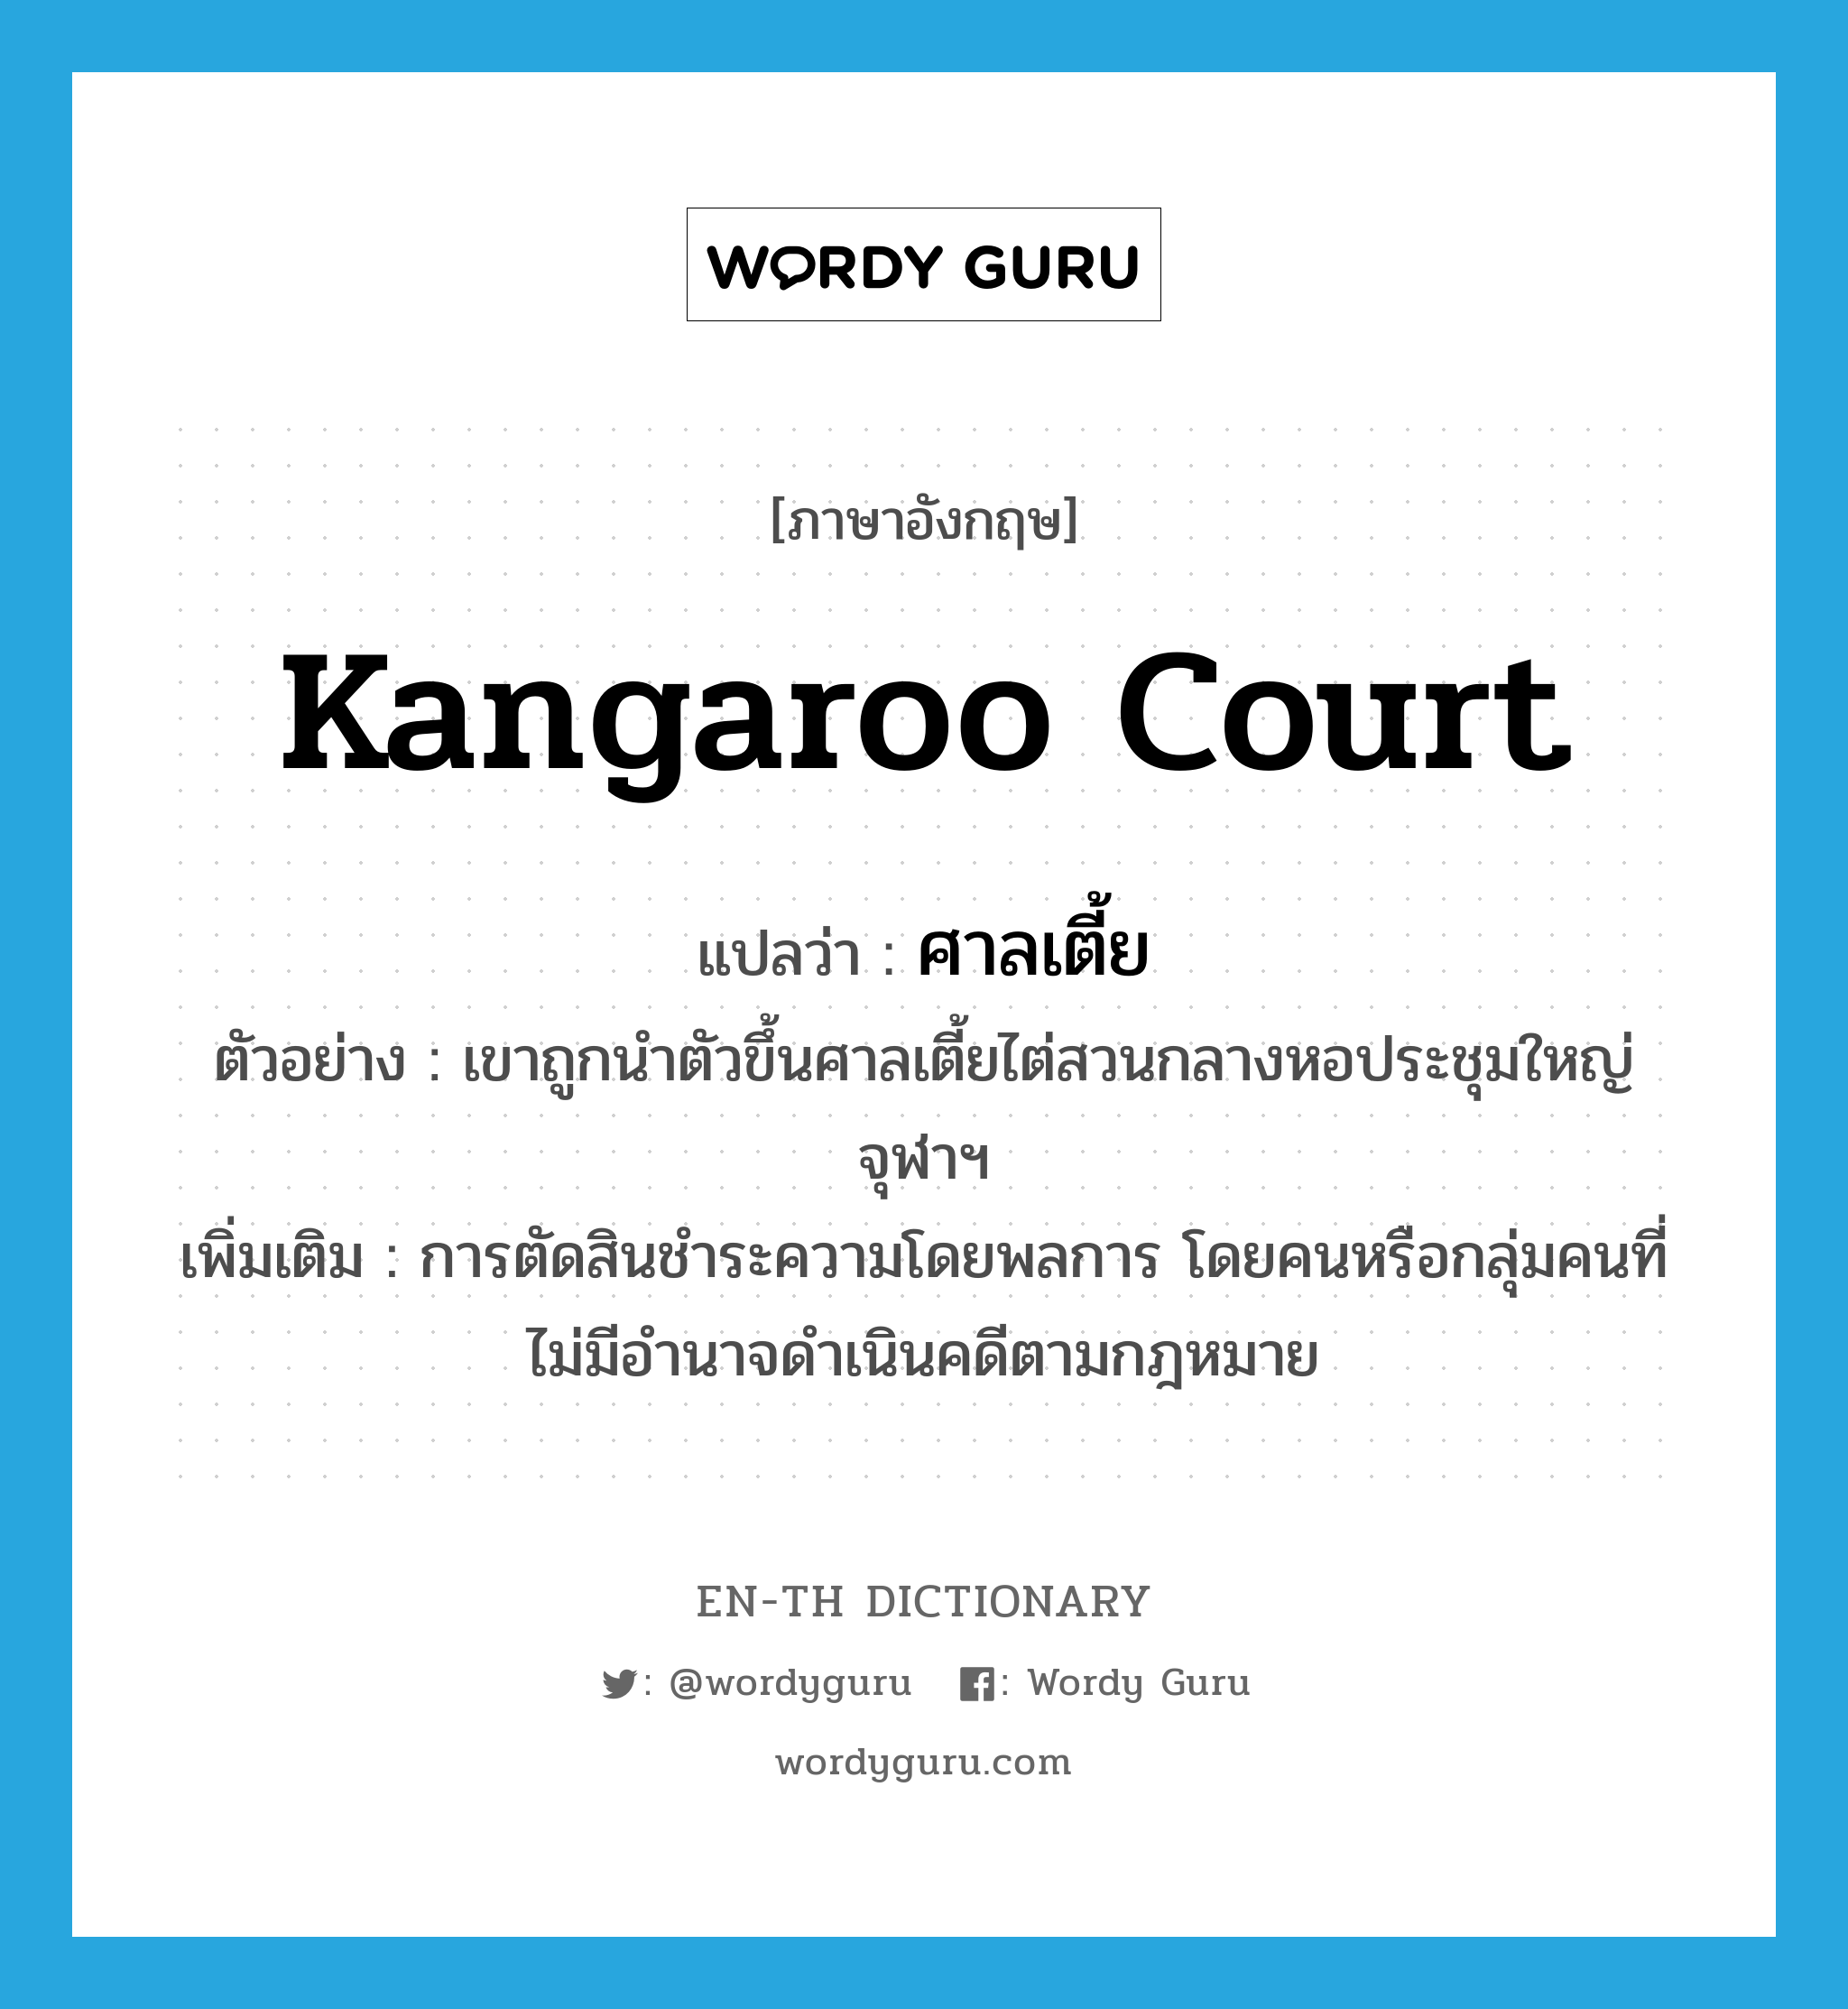 kangaroo court แปลว่า?, คำศัพท์ภาษาอังกฤษ kangaroo court แปลว่า ศาลเตี้ย ประเภท N ตัวอย่าง เขาถูกนำตัวขึ้นศาลเตี้ยไต่สวนกลางหอประชุมใหญ่จุฬาฯ เพิ่มเติม การตัดสินชำระความโดยพลการ โดยคนหรือกลุ่มคนที่ไม่มีอำนาจดำเนินคดีตามกฎหมาย หมวด N